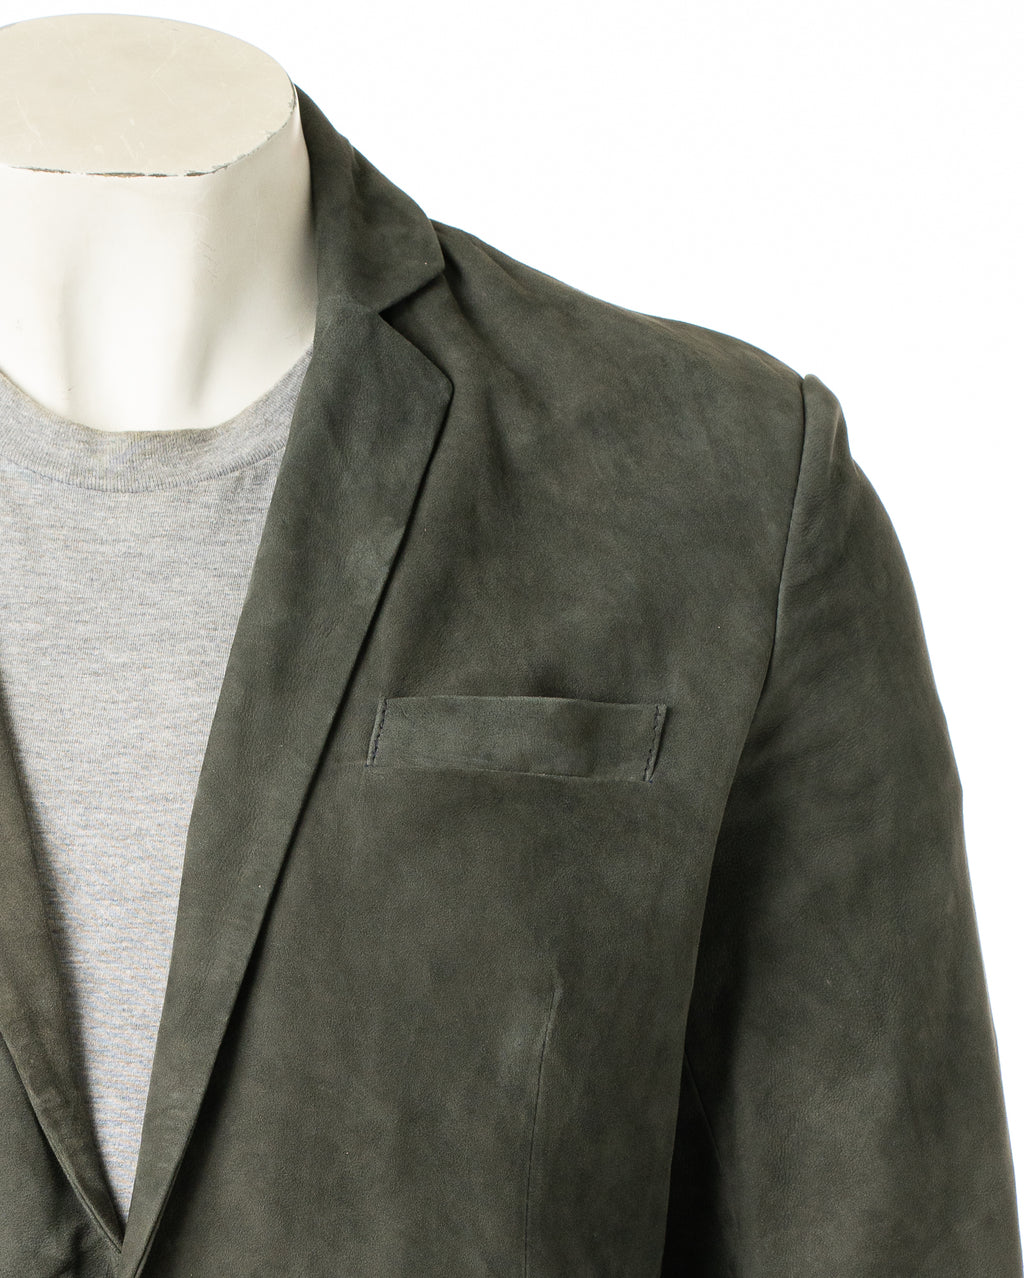 Men's Grey Fitted Tailored Suede Blazer: Federigo